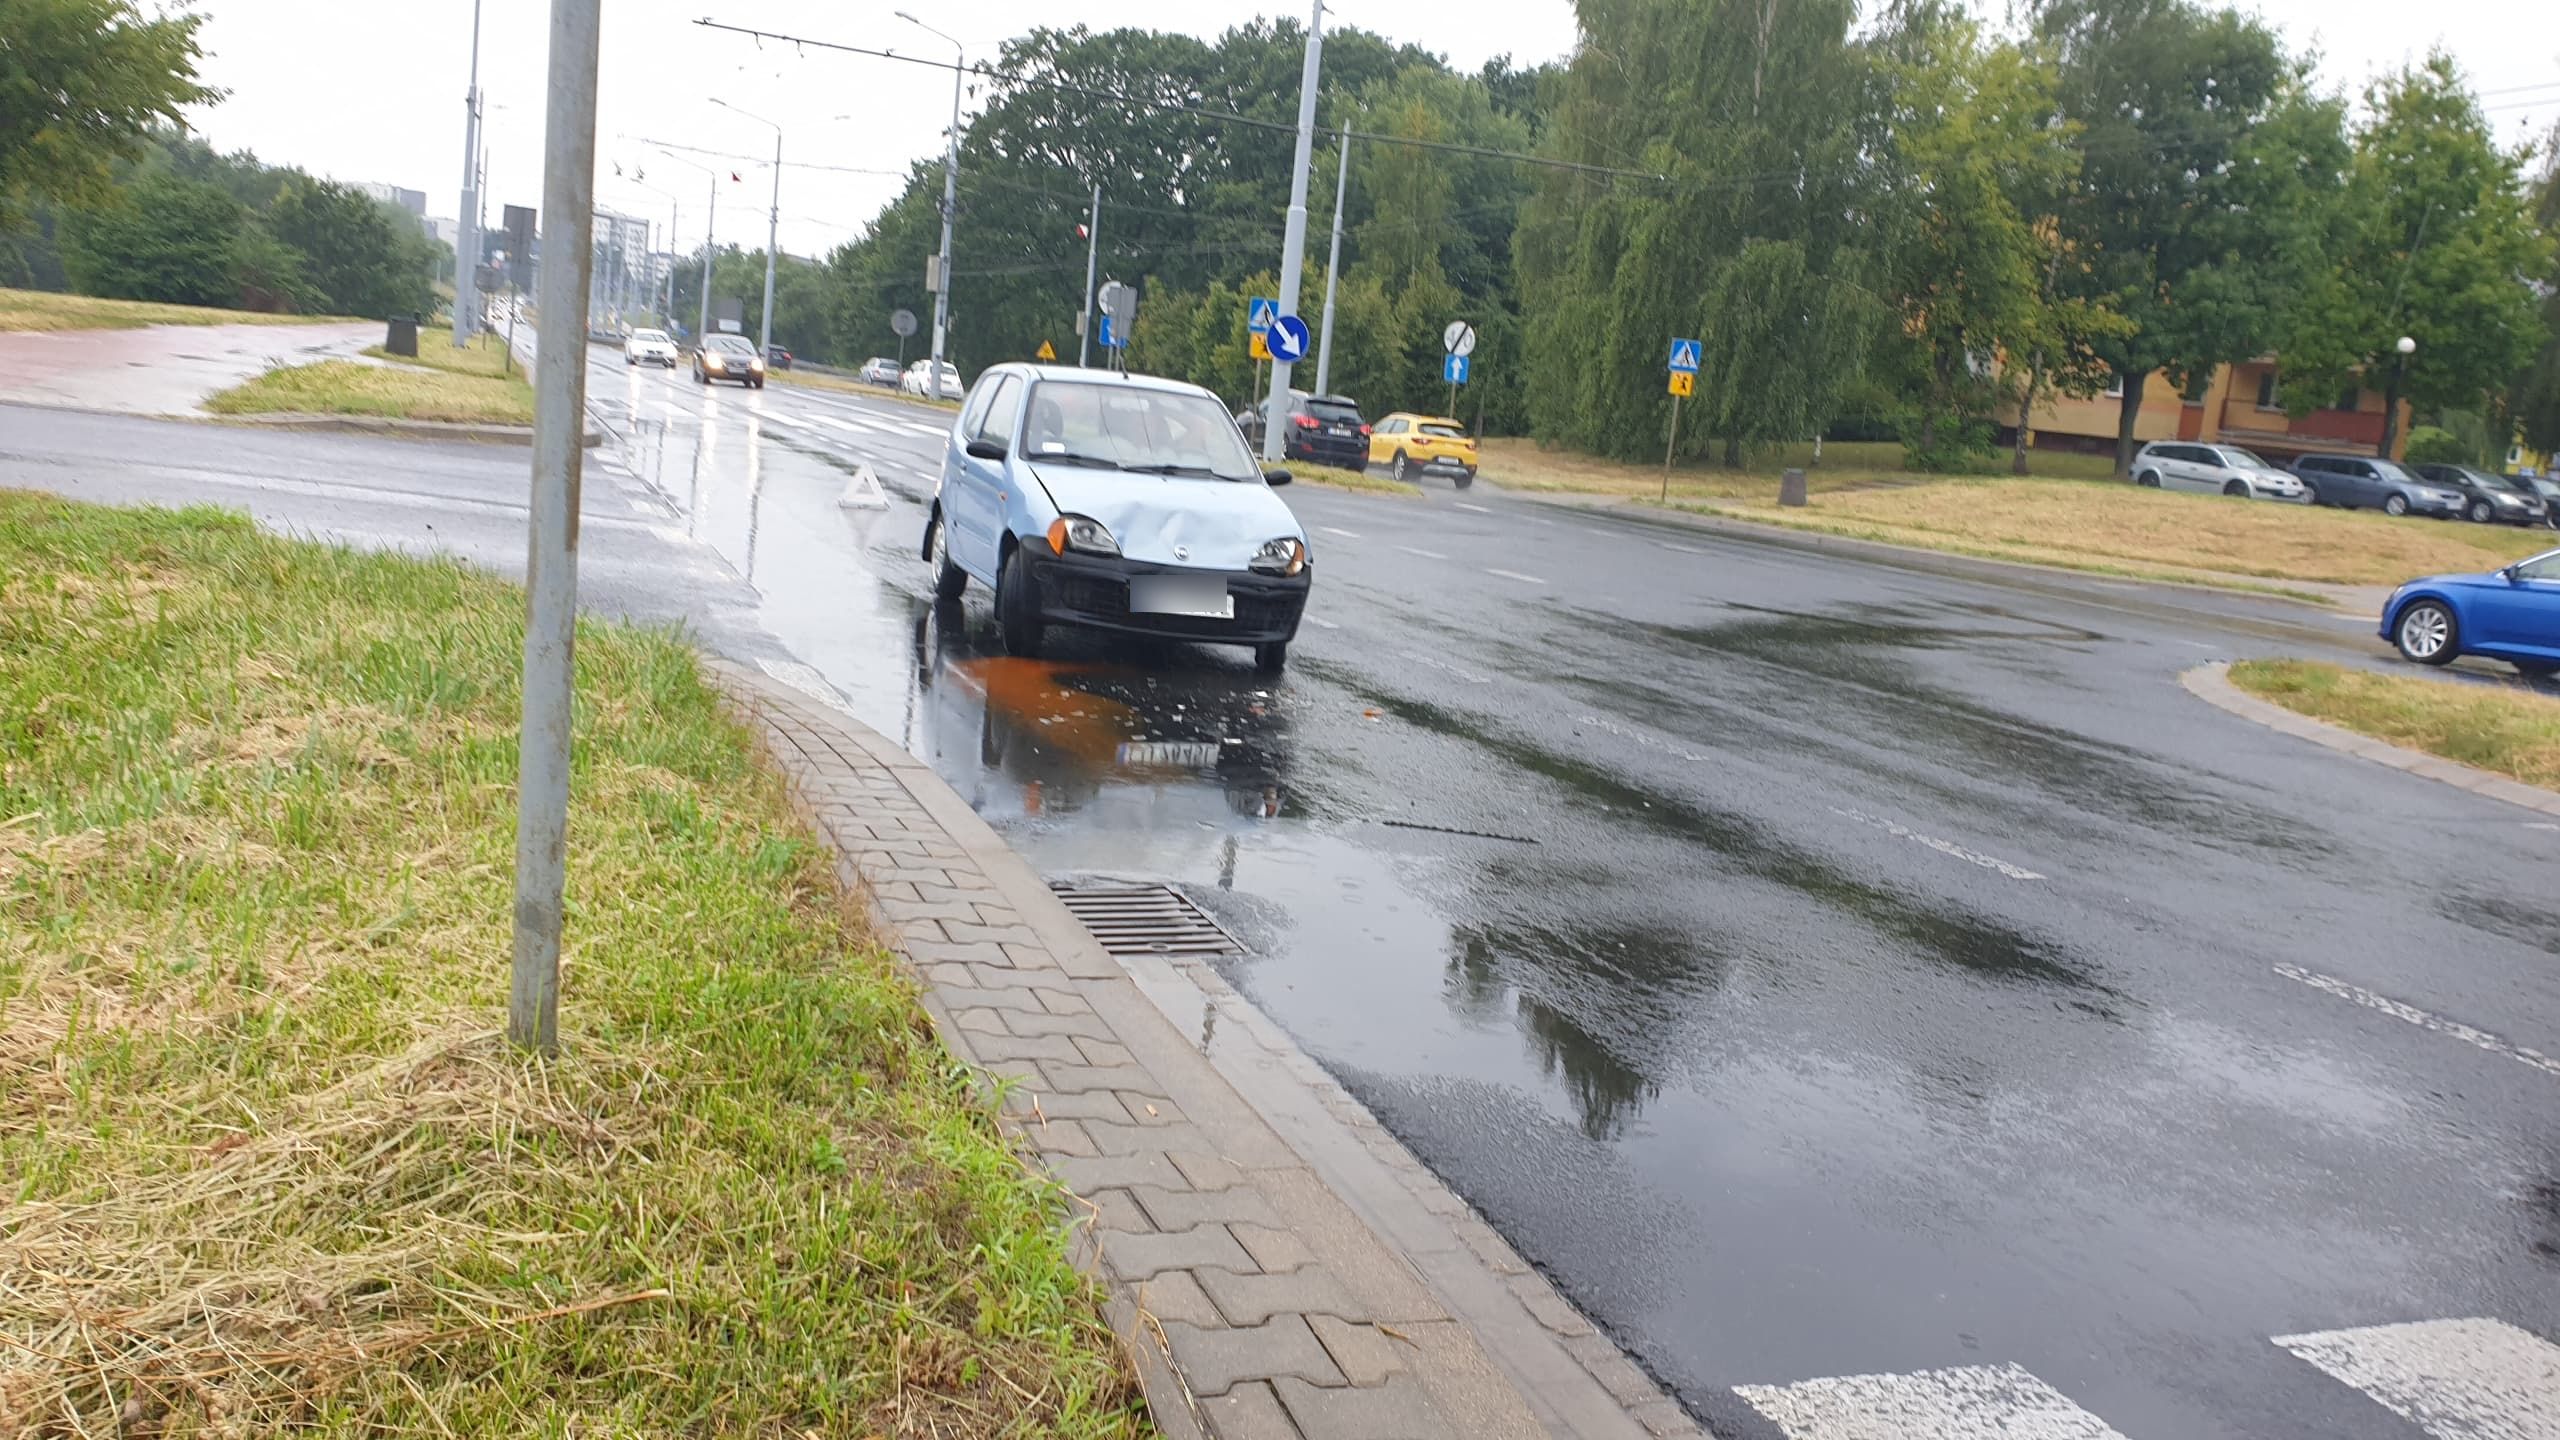 Popadało i się zaczęło. Wysyp kolizji na ulicach Lublina i drogach regionu (zdjęcia)